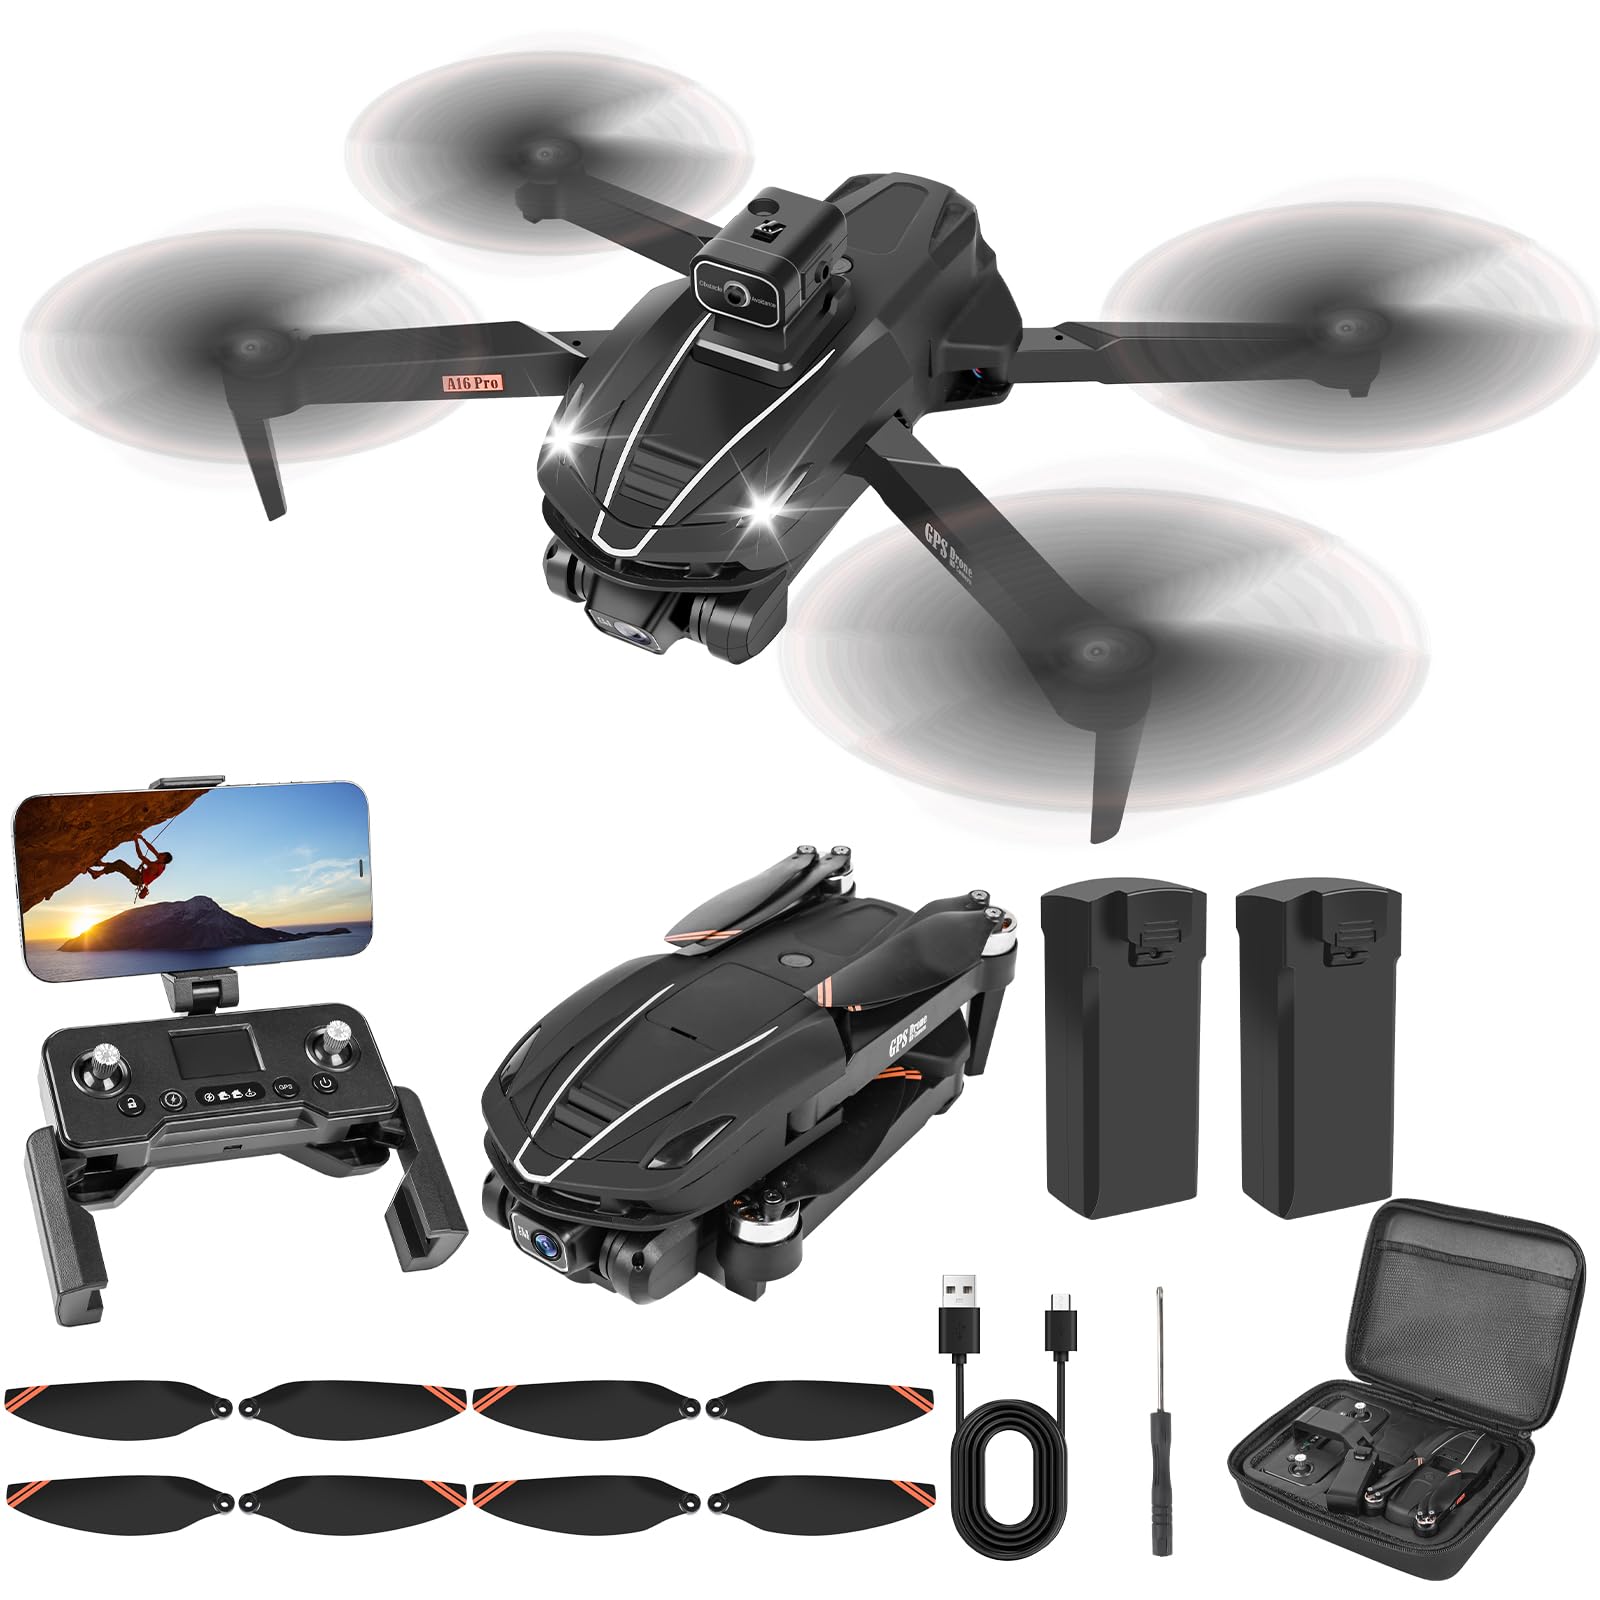 Weinsamkeit GPS Drohne mit Kamera 4K Faltbar Kameradrohne 3KM Große Reichweite 5G WiFi FPV Drone, 40 Min. Flugzeit, Bürstenloser Motor, Follow-Me/Rückkehr, RC Quadrocopter für Anfänger Erwachsene